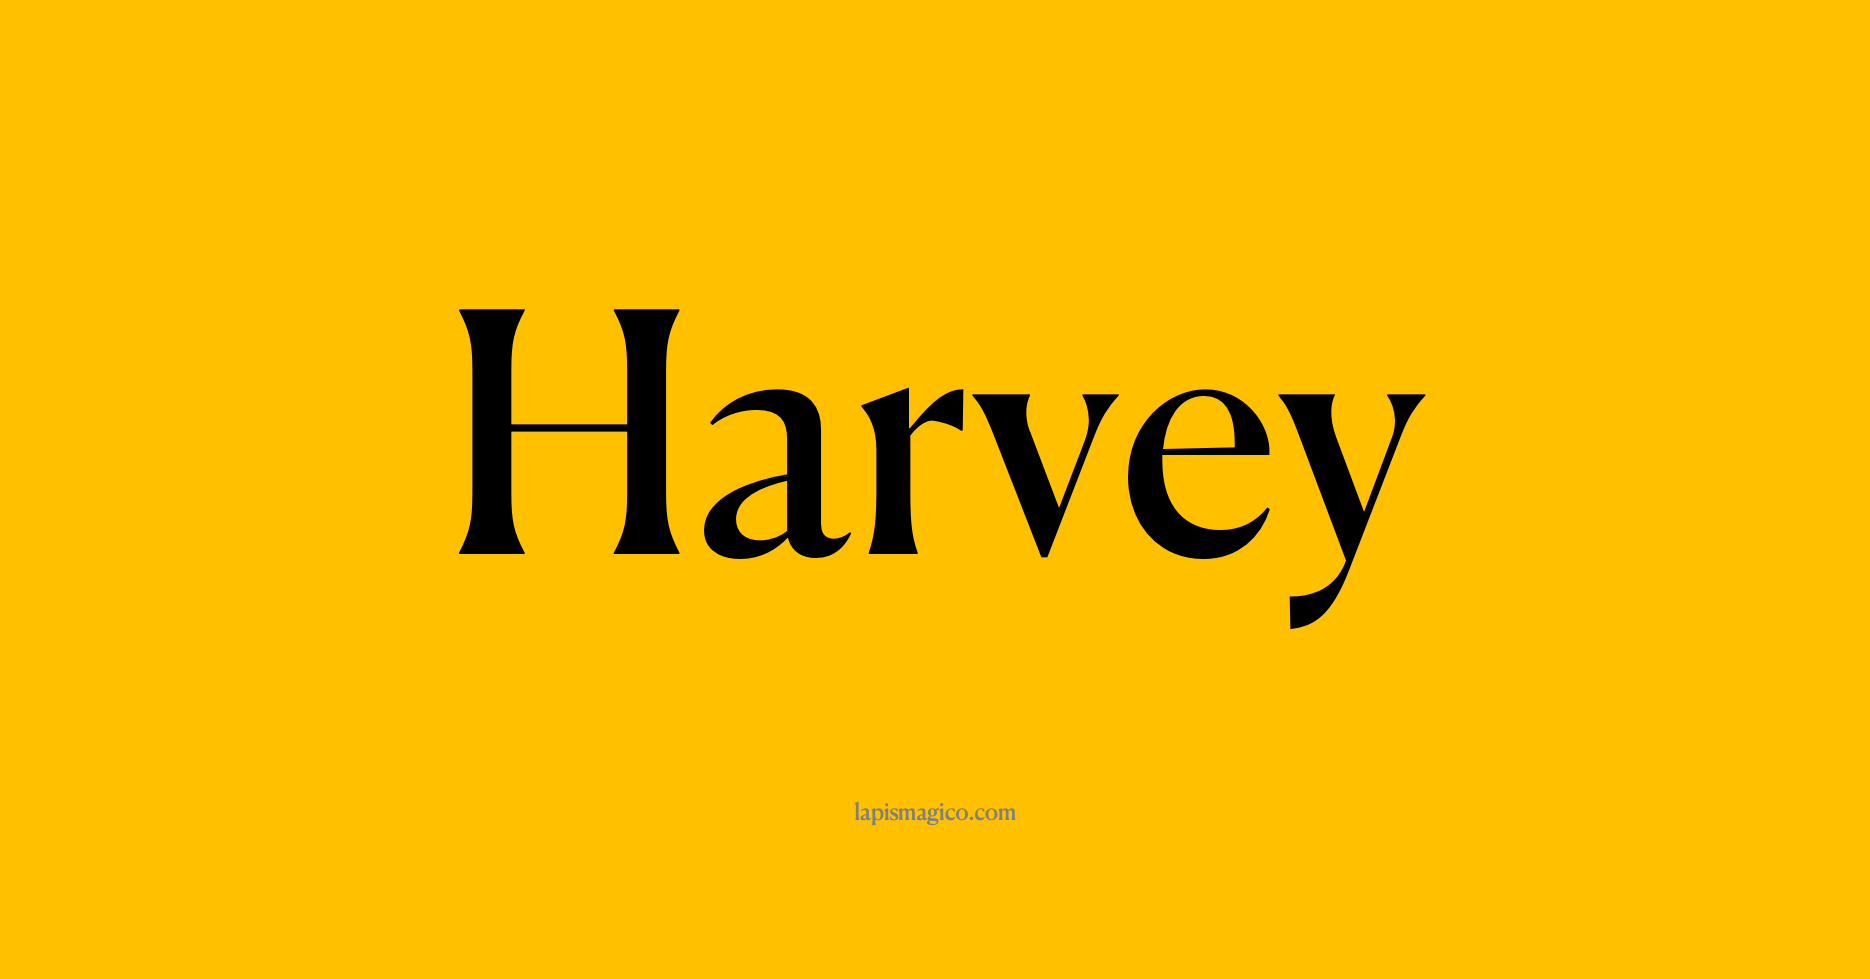 Nome Harvey, ficha divertida com pontilhado para crianças